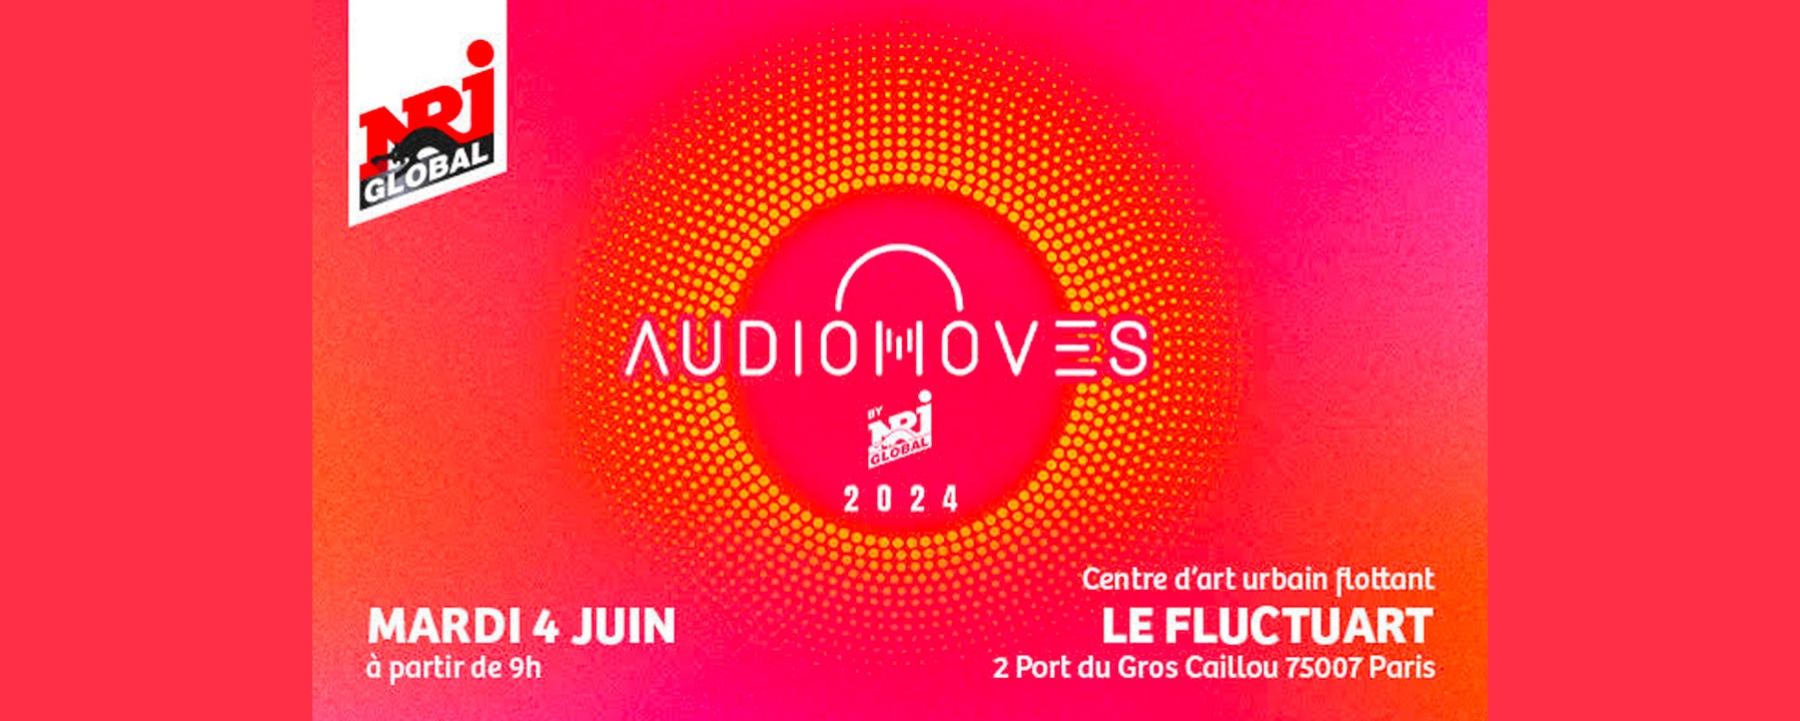 Conférence AudioMoves : 5ème édition